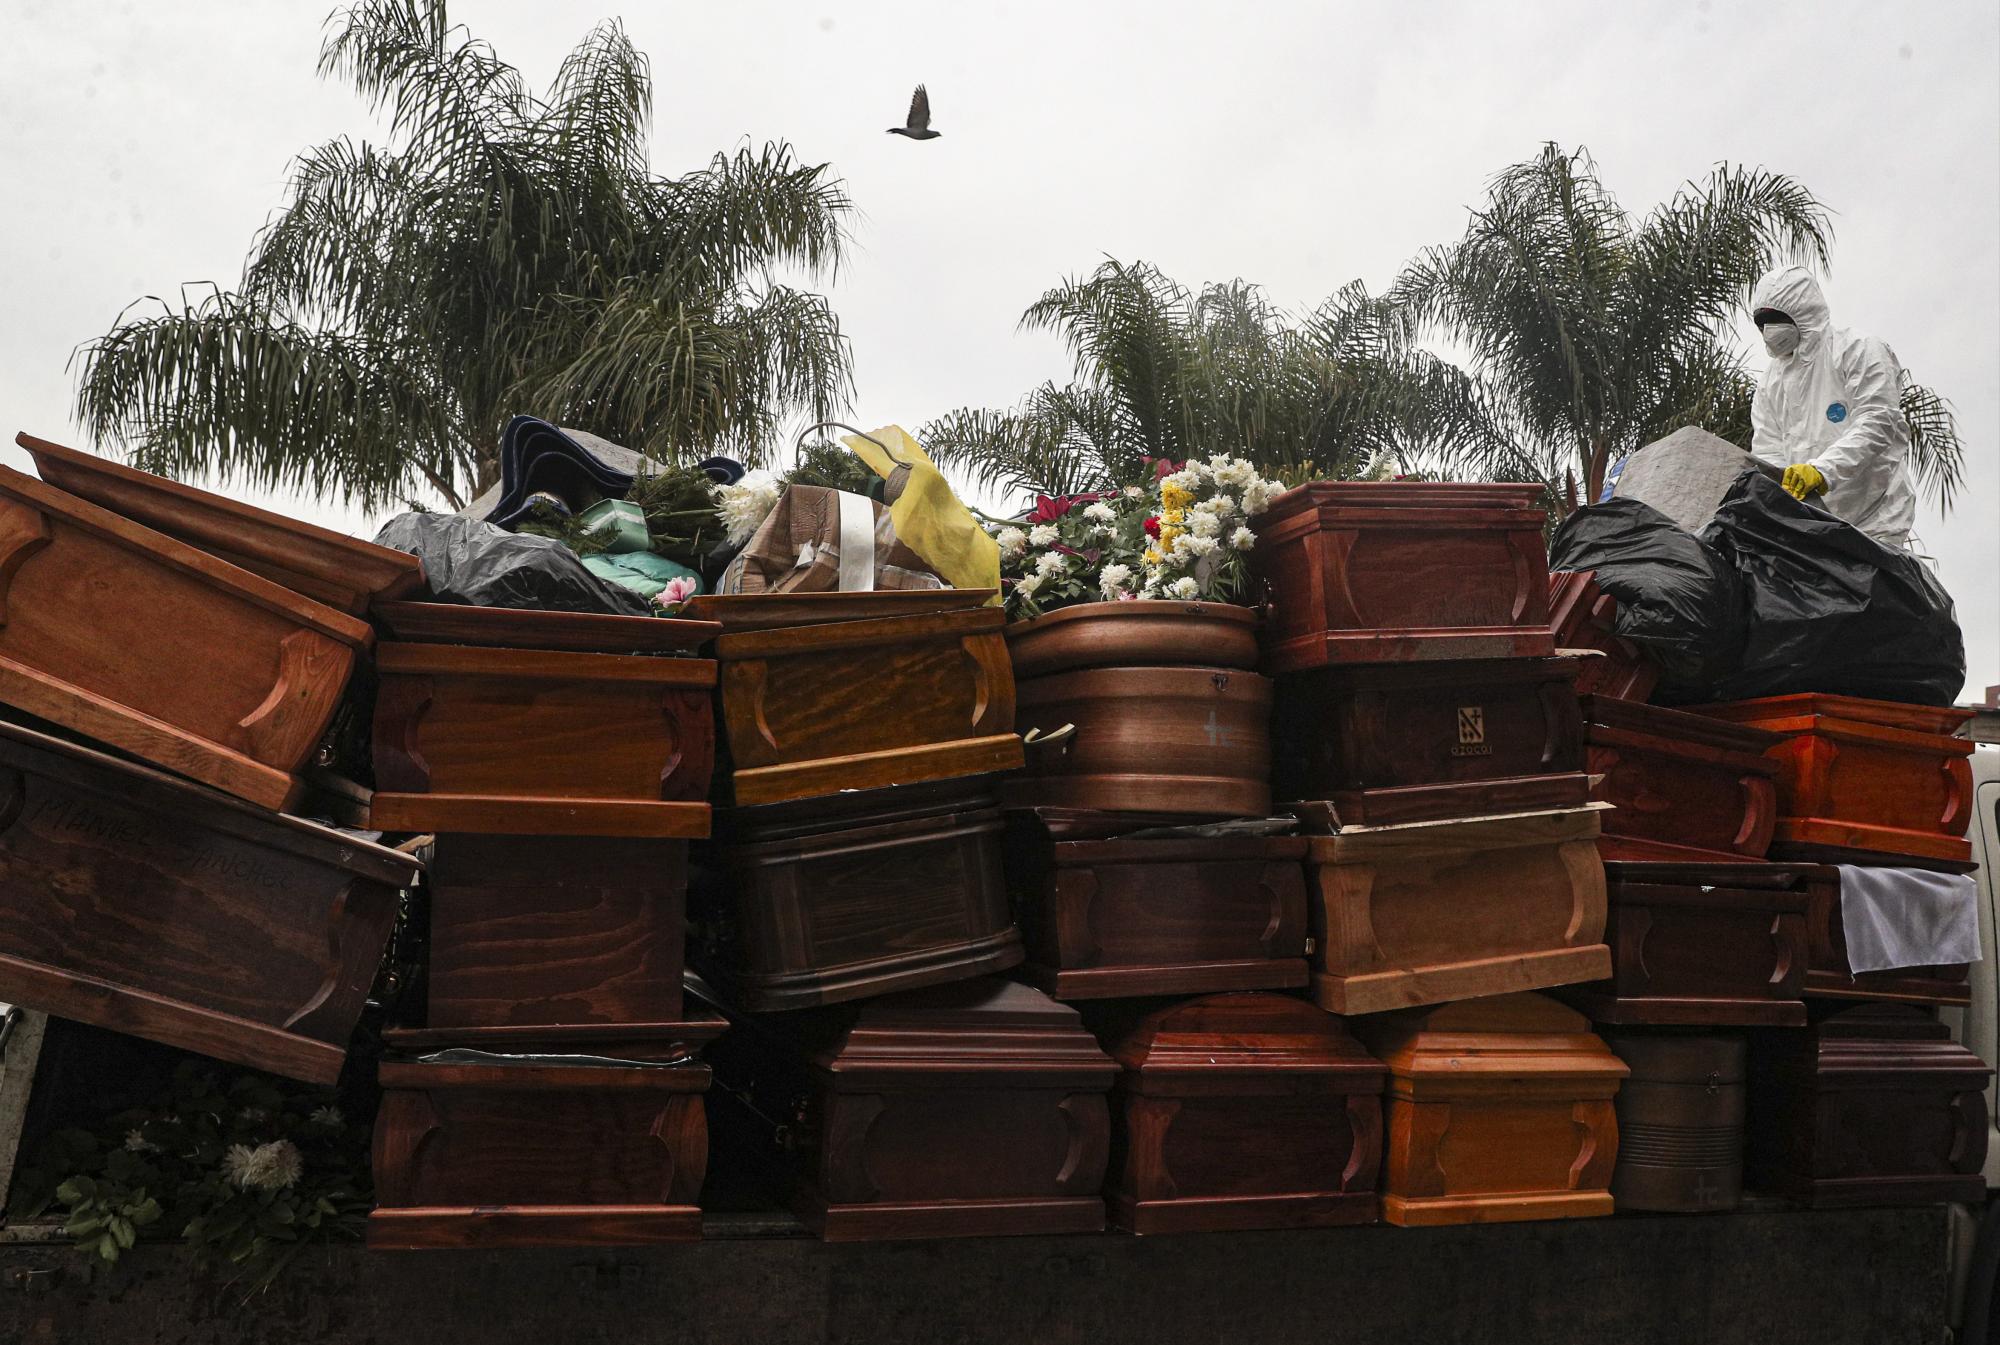 Trabajadores recolectan y apilan ataúdes de personas recientemente cremadas en medio de la pandemia del nuevo coronavirus en el cementerio La Recoleta en Santiago, Chile, el lunes 6 de julio de 2020. (AP Foto/Esteban Felix)